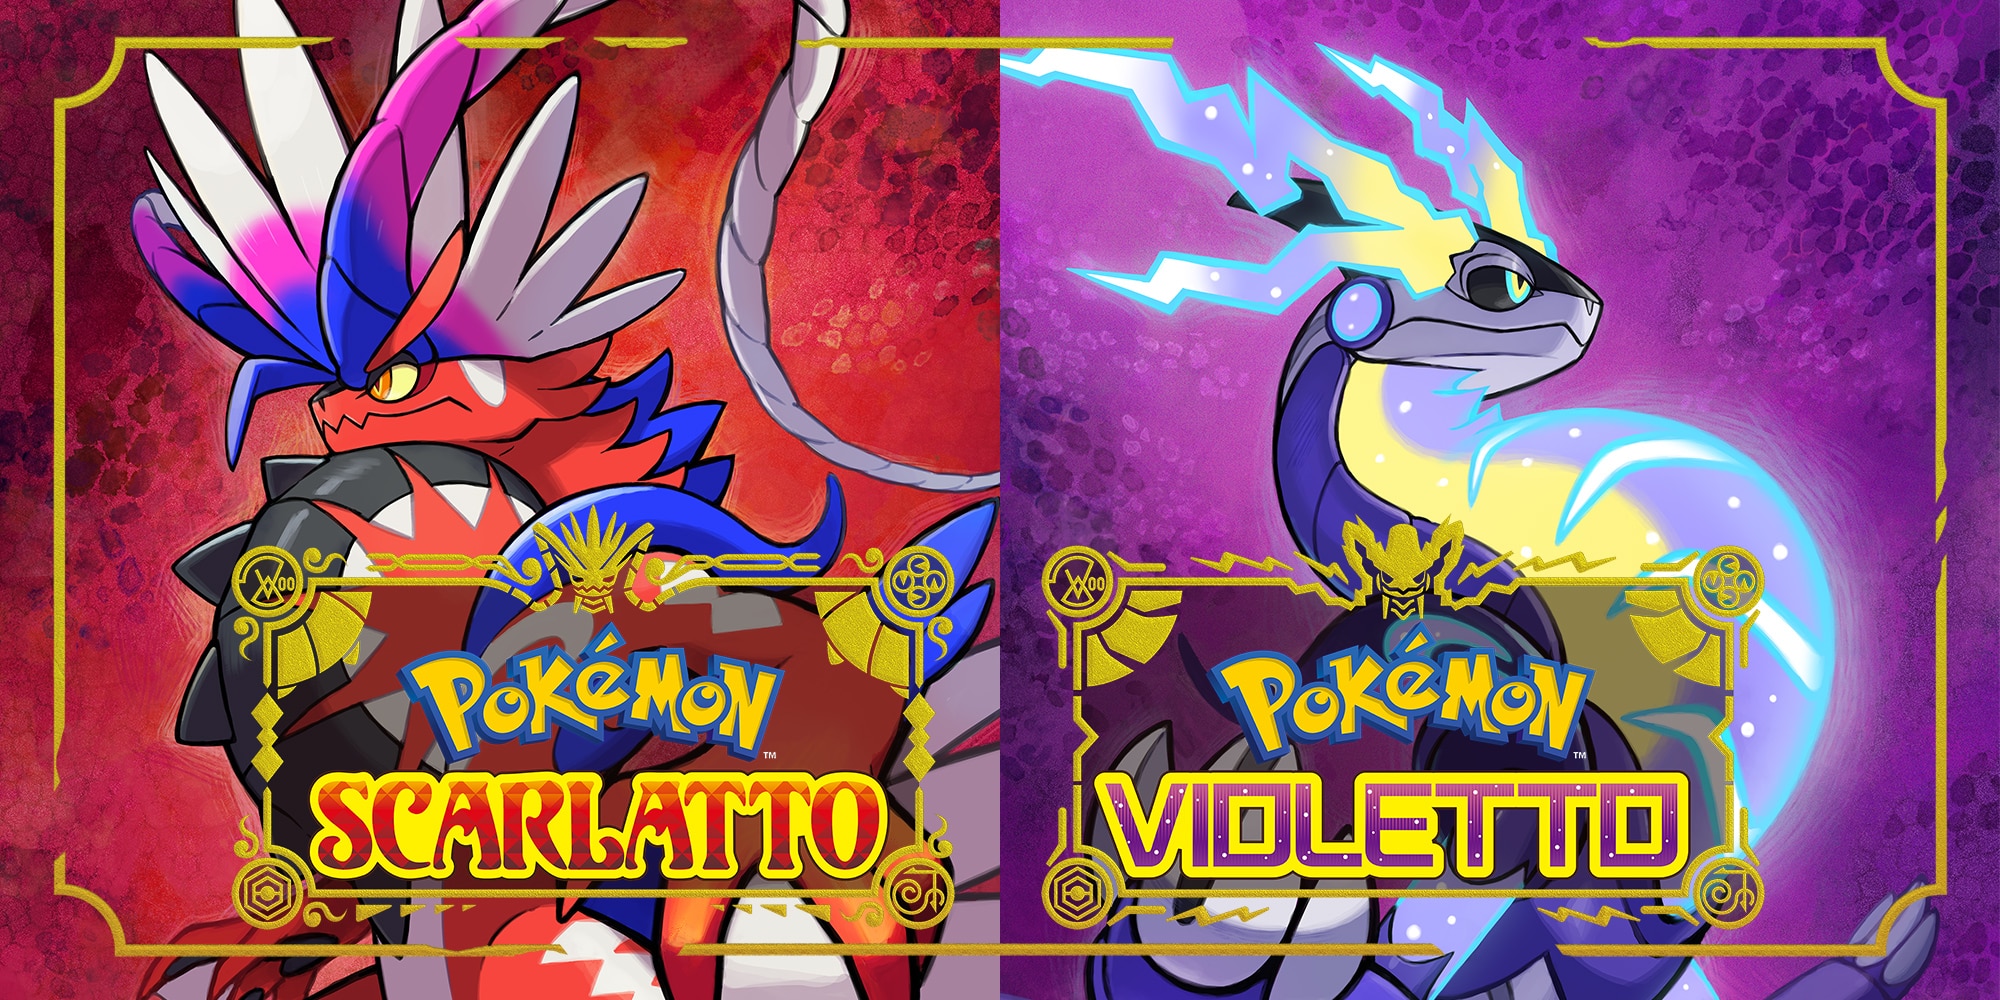 VIDEOBUGGANDO #07: Pokémon Scarlatto e Violetto, una generazione piena di bug! 1